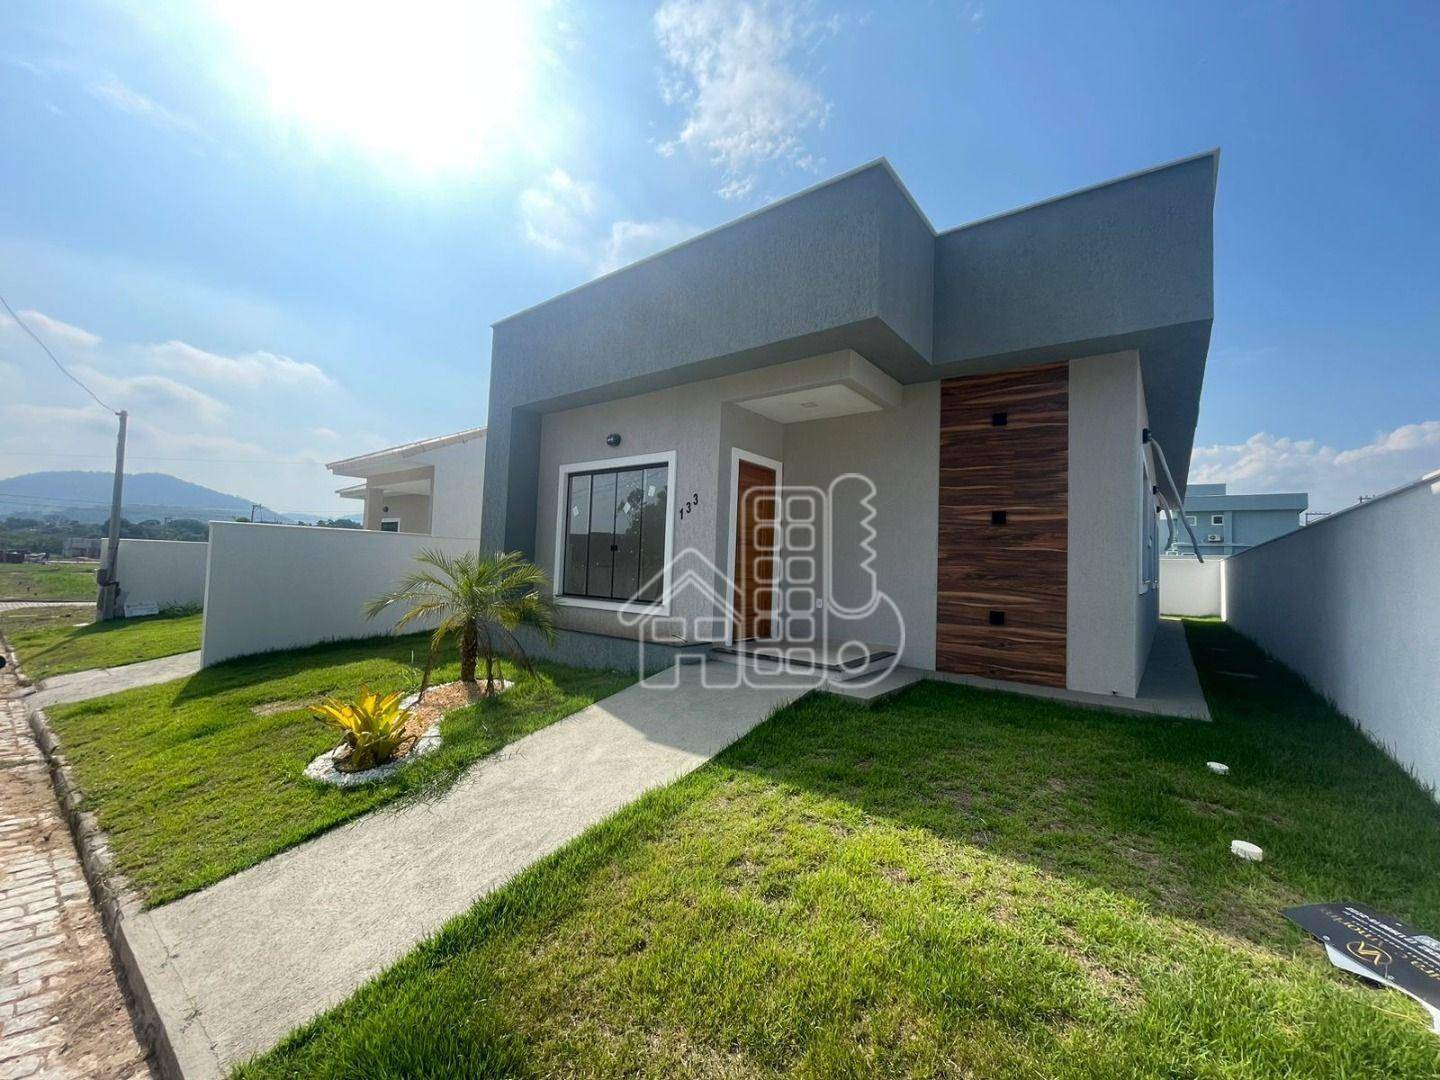 Casa com 3 dormitórios à venda, 99 m² por R$ 550.000,00 - Ubatiba - Maricá/RJ